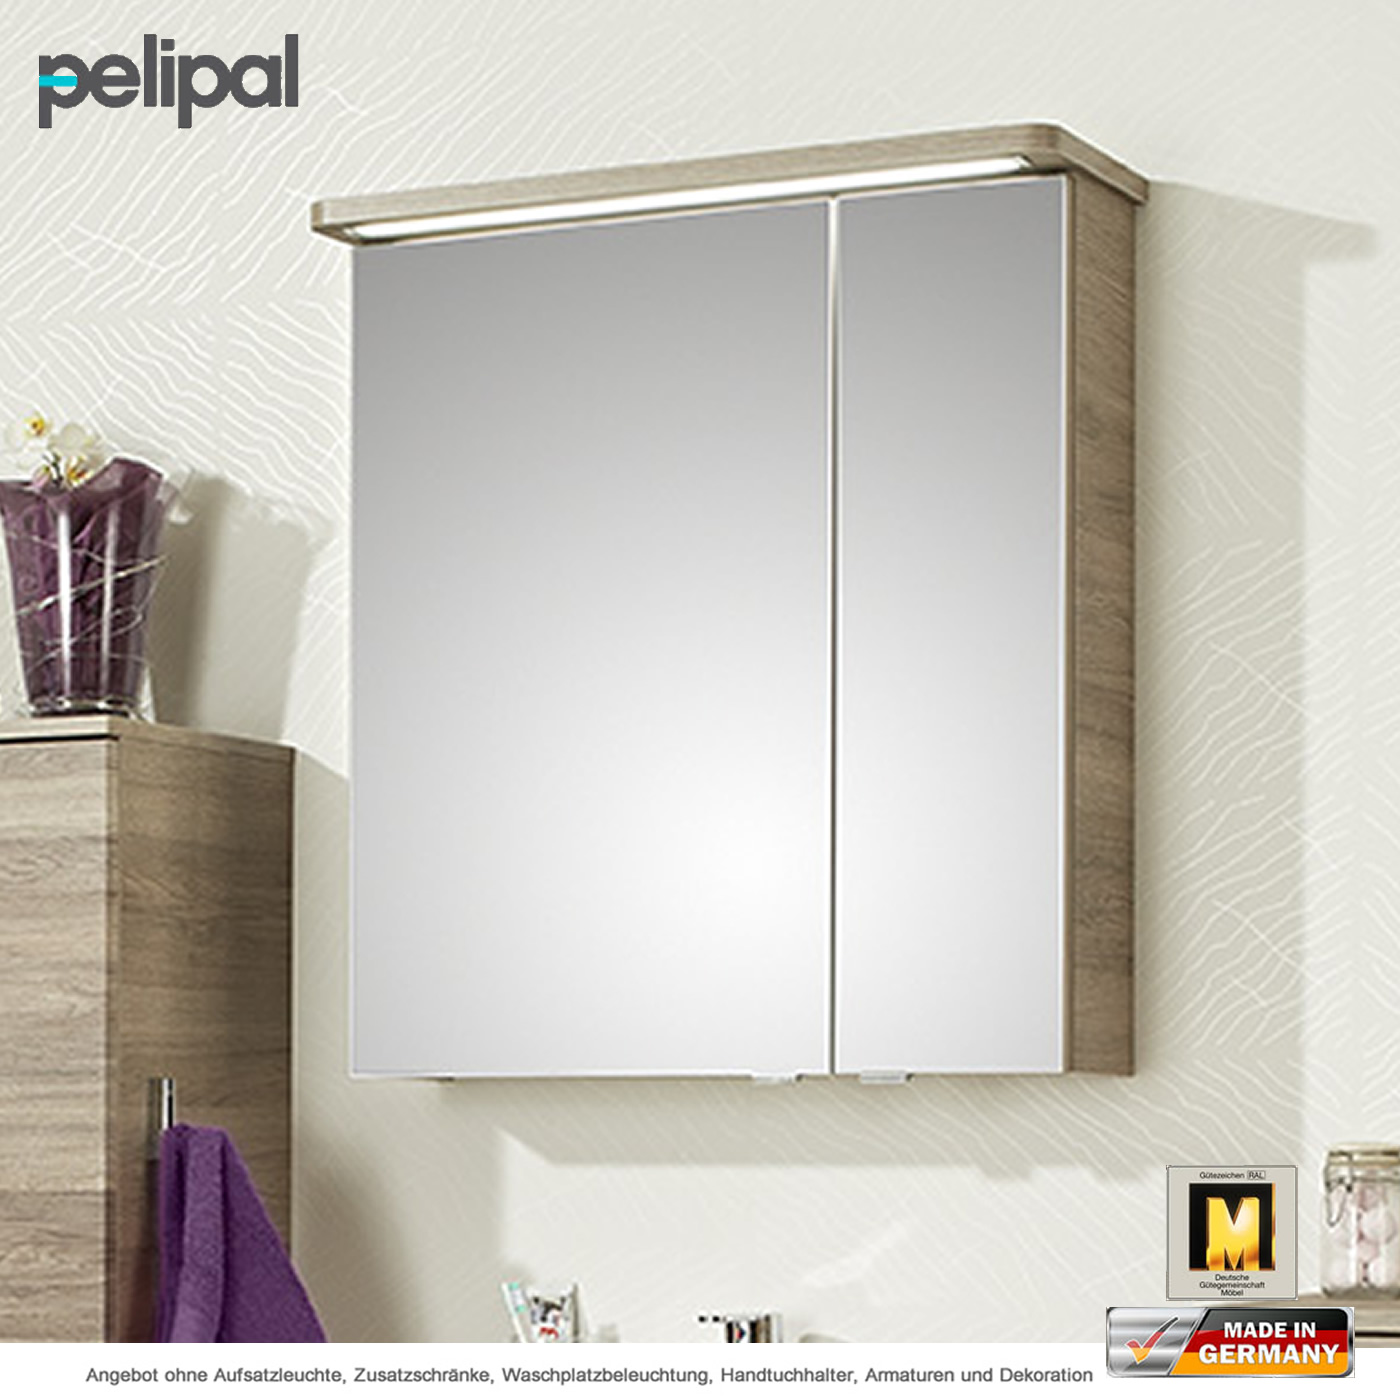 Pelipal Balto Spiegelschrank 66 cm mit 2 Türen | Impulsbad